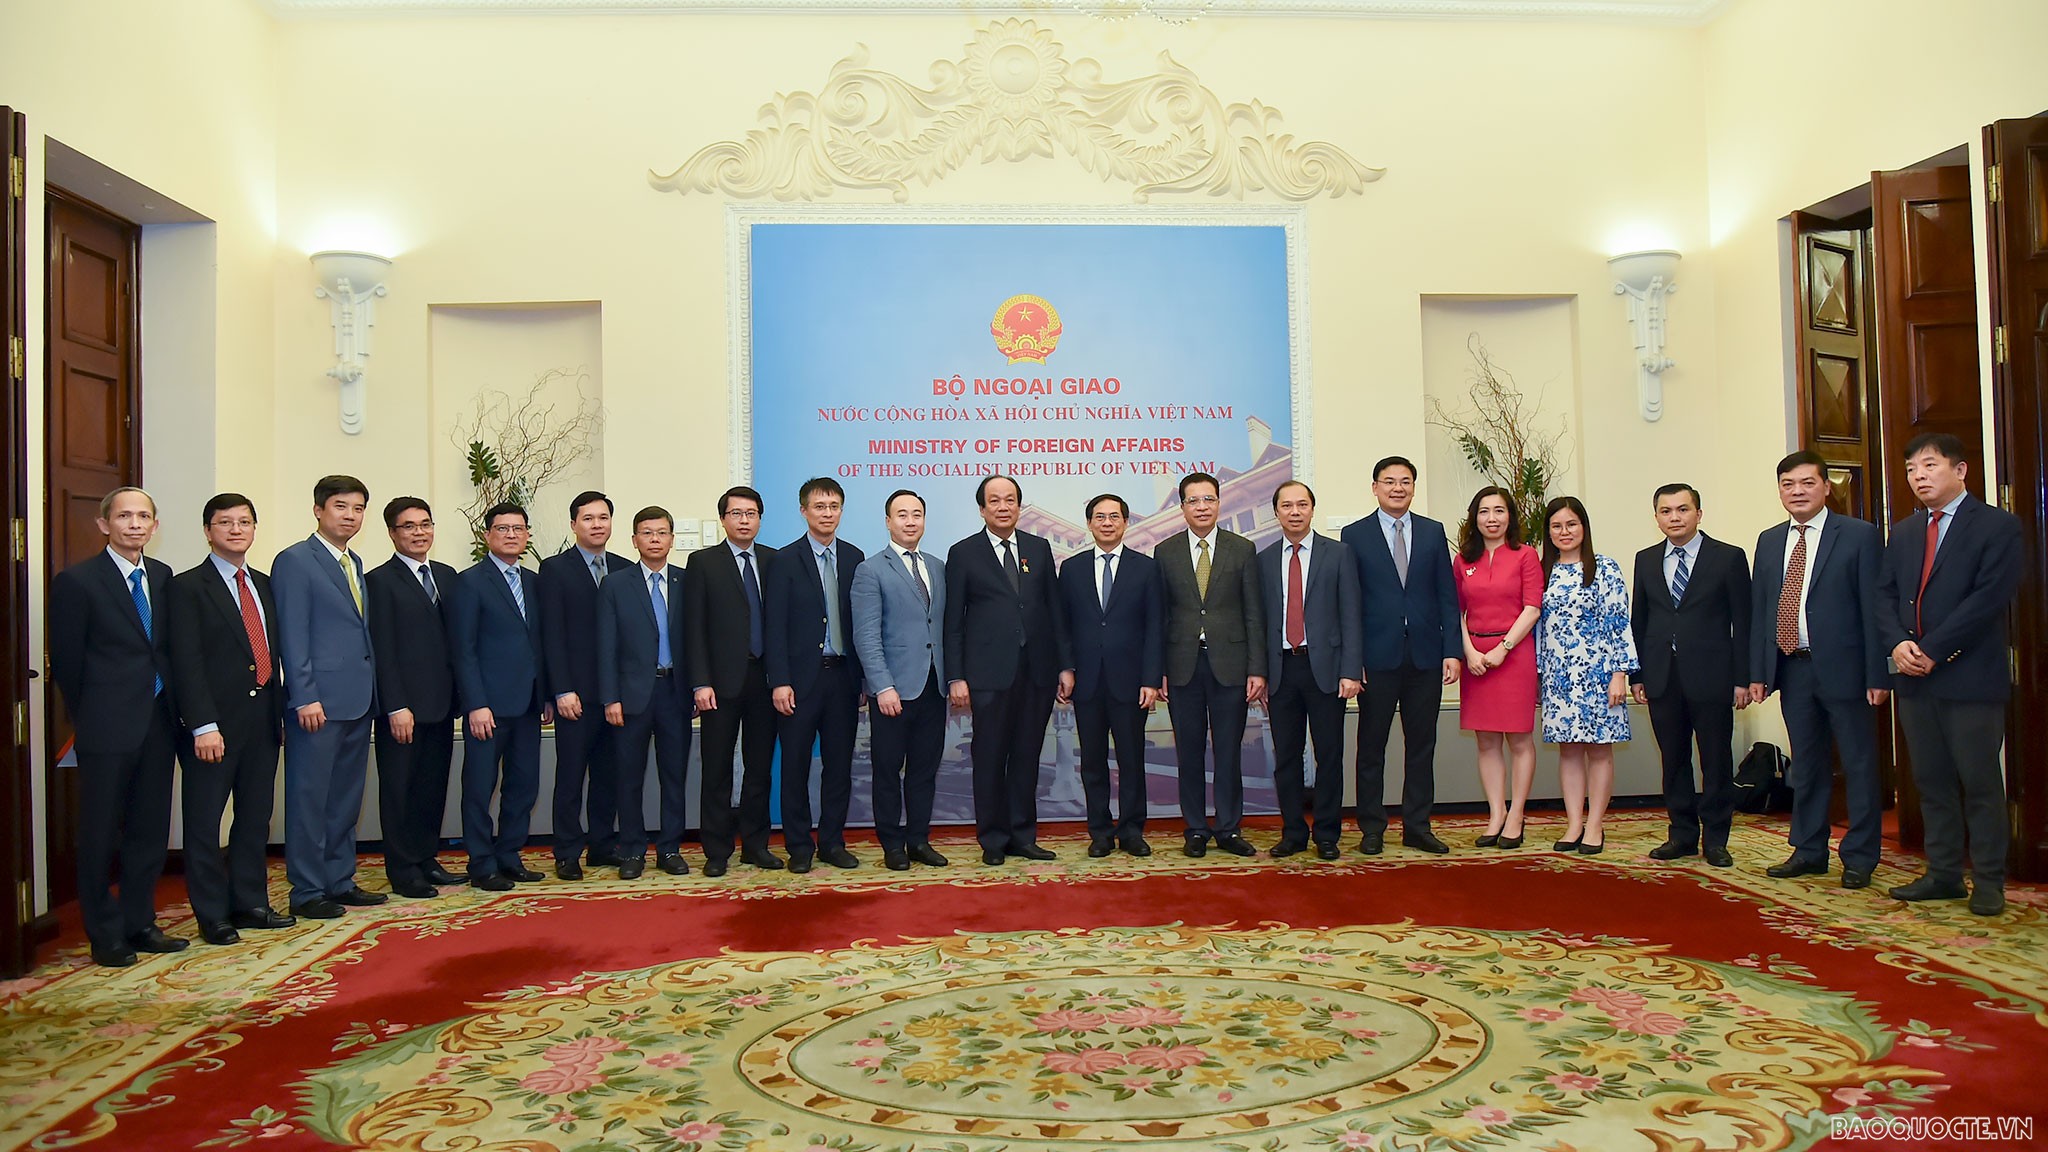 Bộ Ngoại giao trao Kỷ niệm chương Vì sự nghiệp Ngoại giao Việt Nam cho ông Mai Tiến Dũng